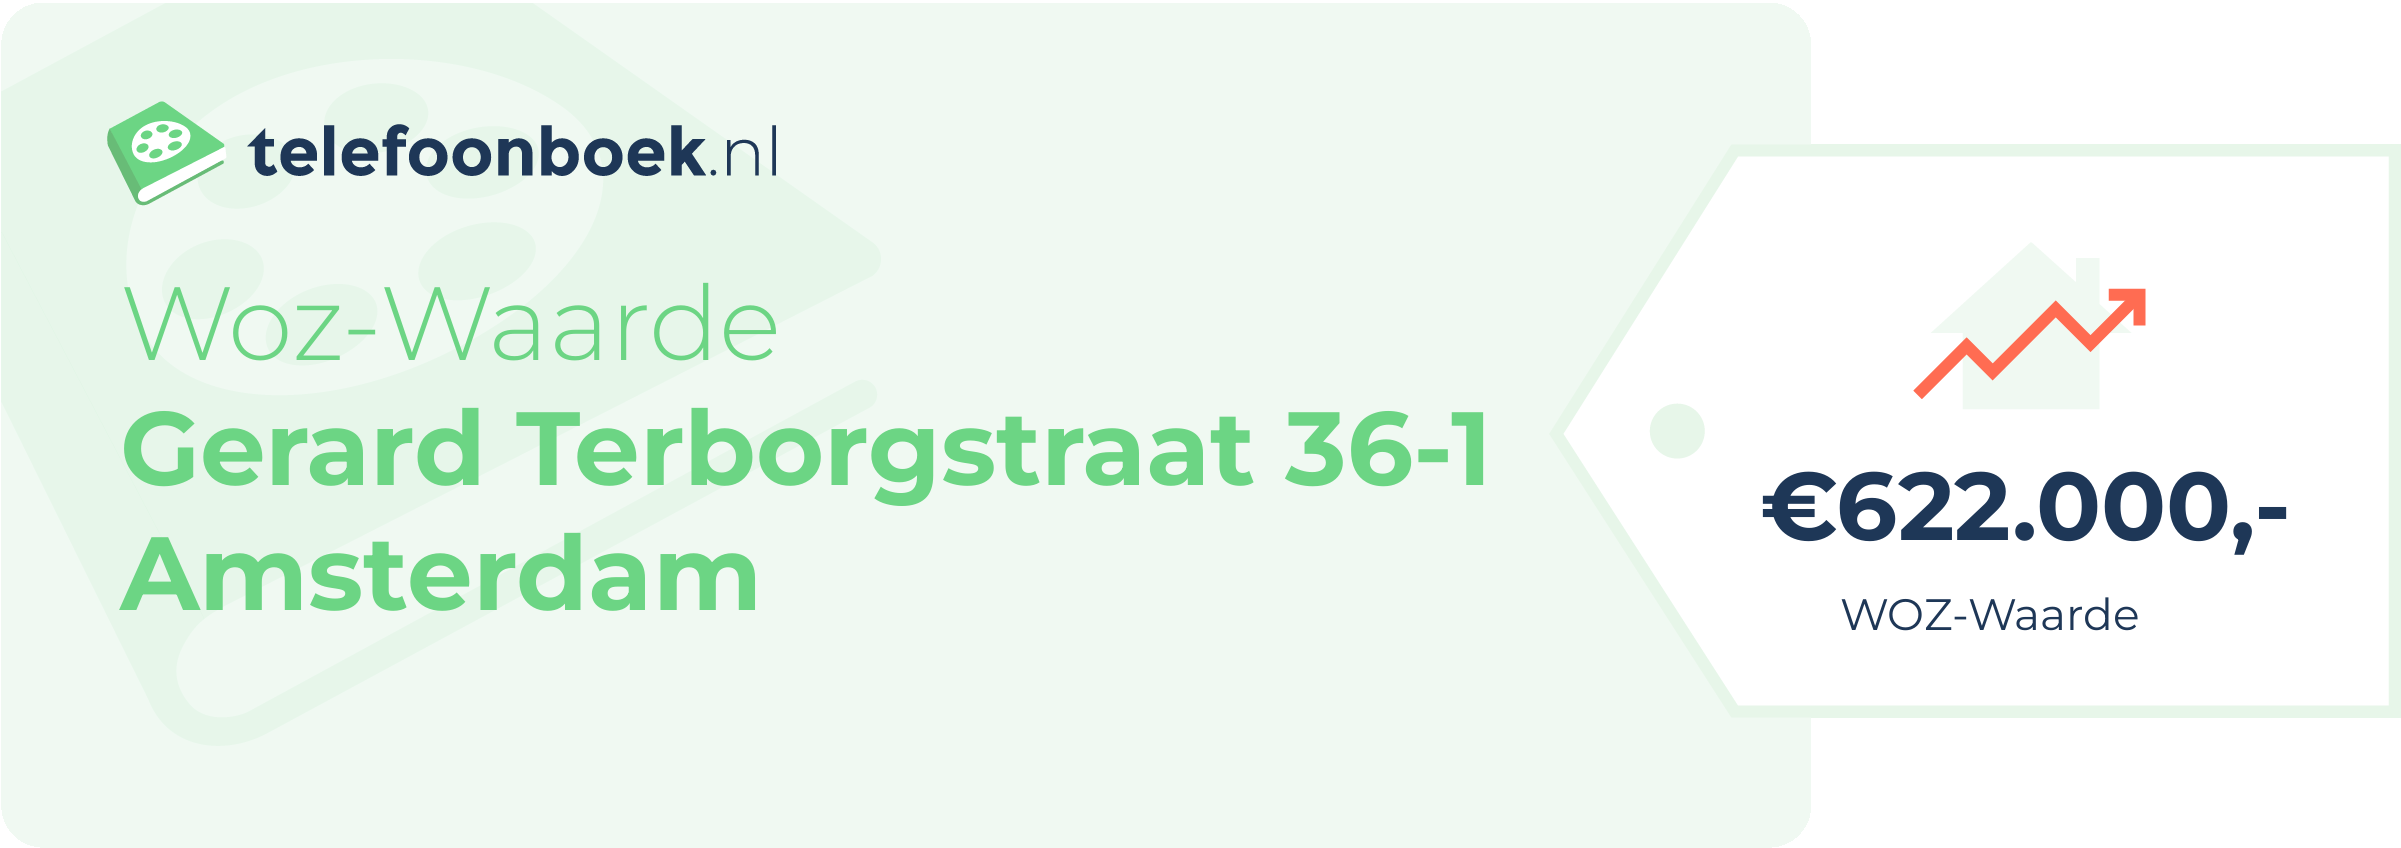 WOZ-waarde Gerard Terborgstraat 36-1 Amsterdam